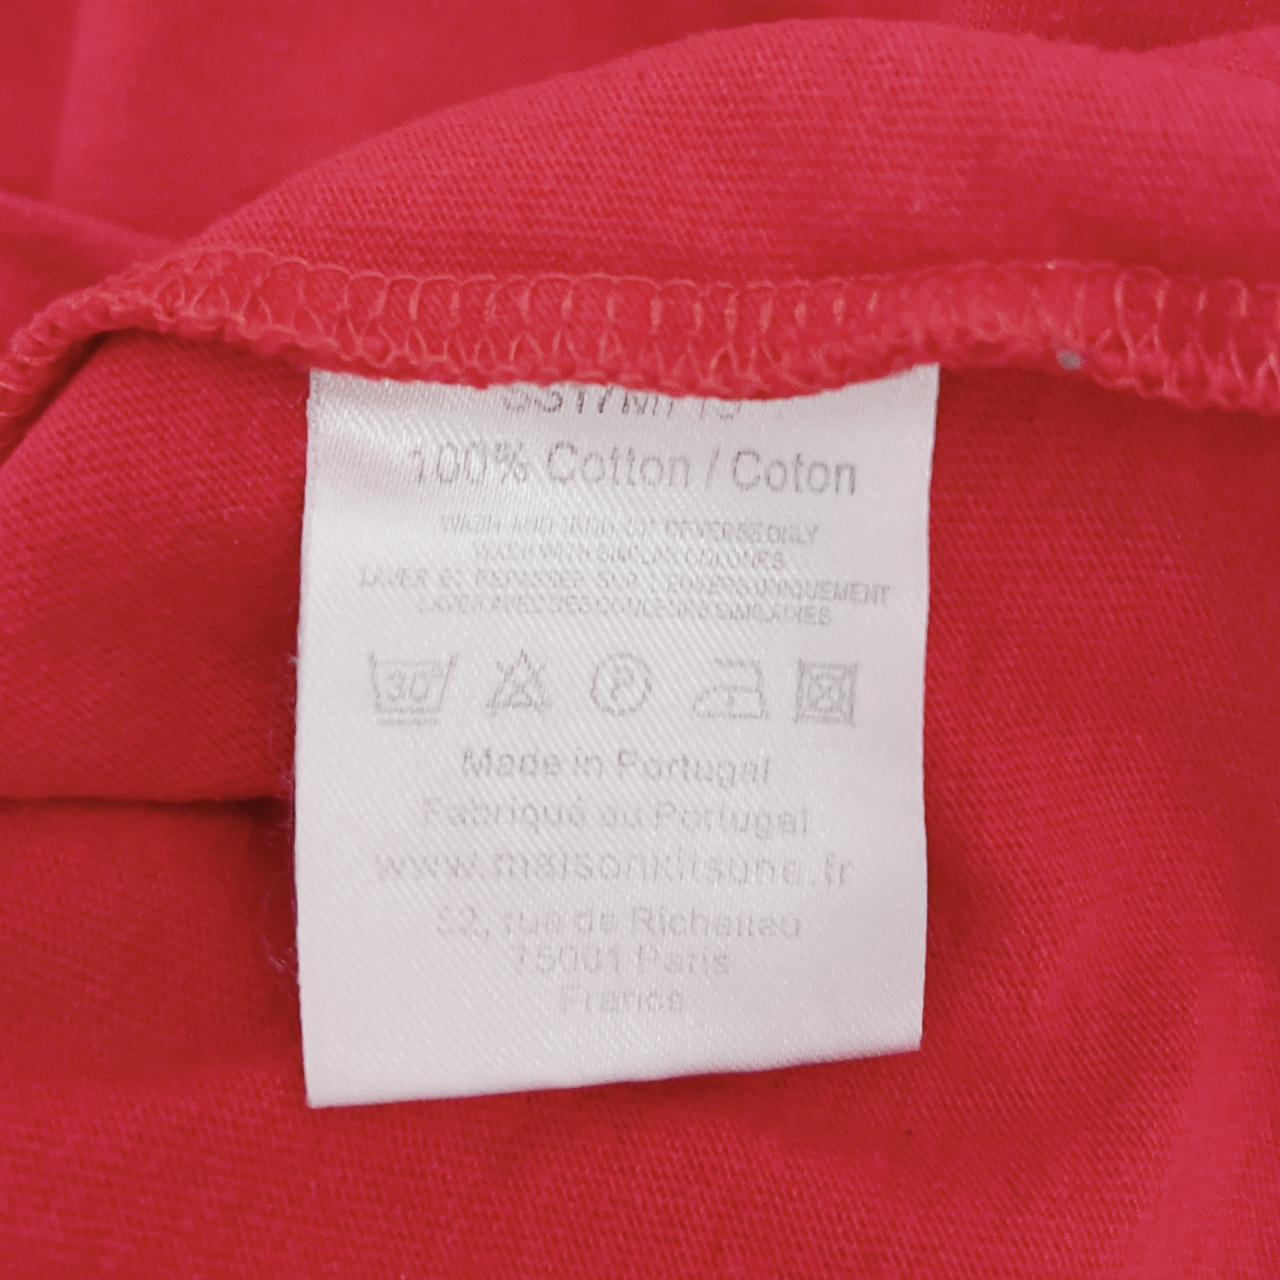 Maison Kitsune Logo Tshirt Size L Excellent condition - Depop